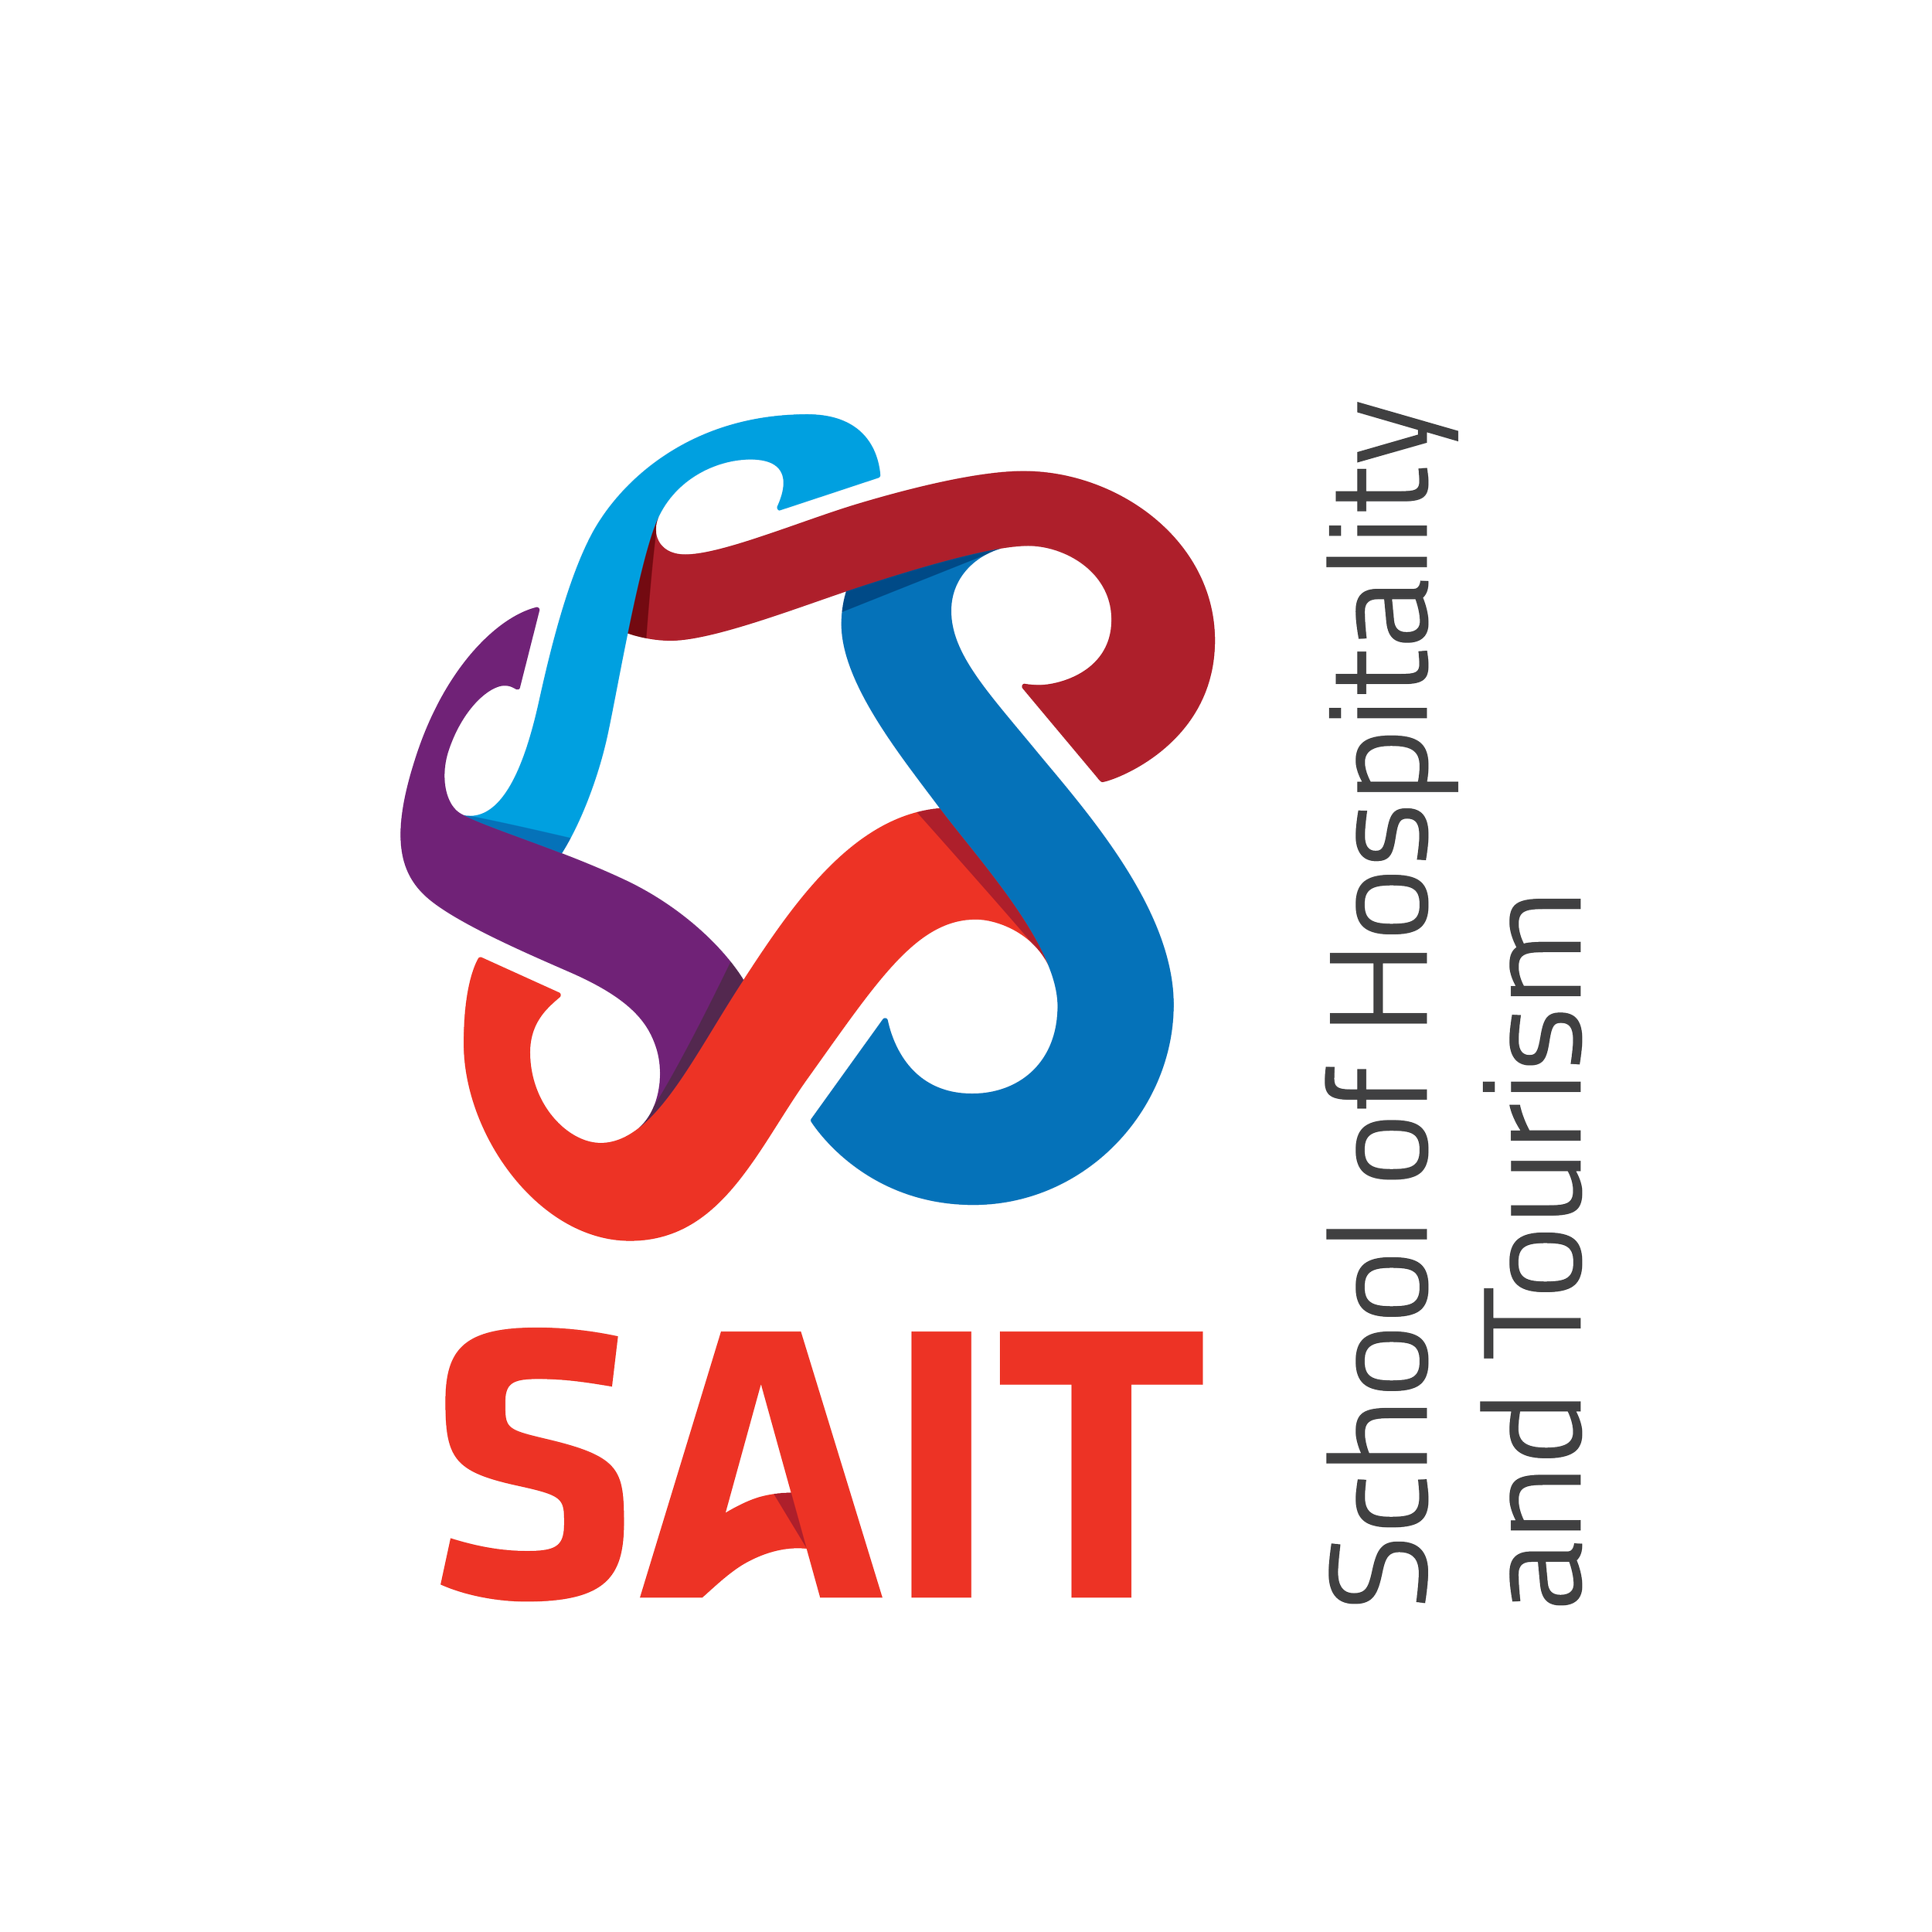 SAIT SoHT Logo.png